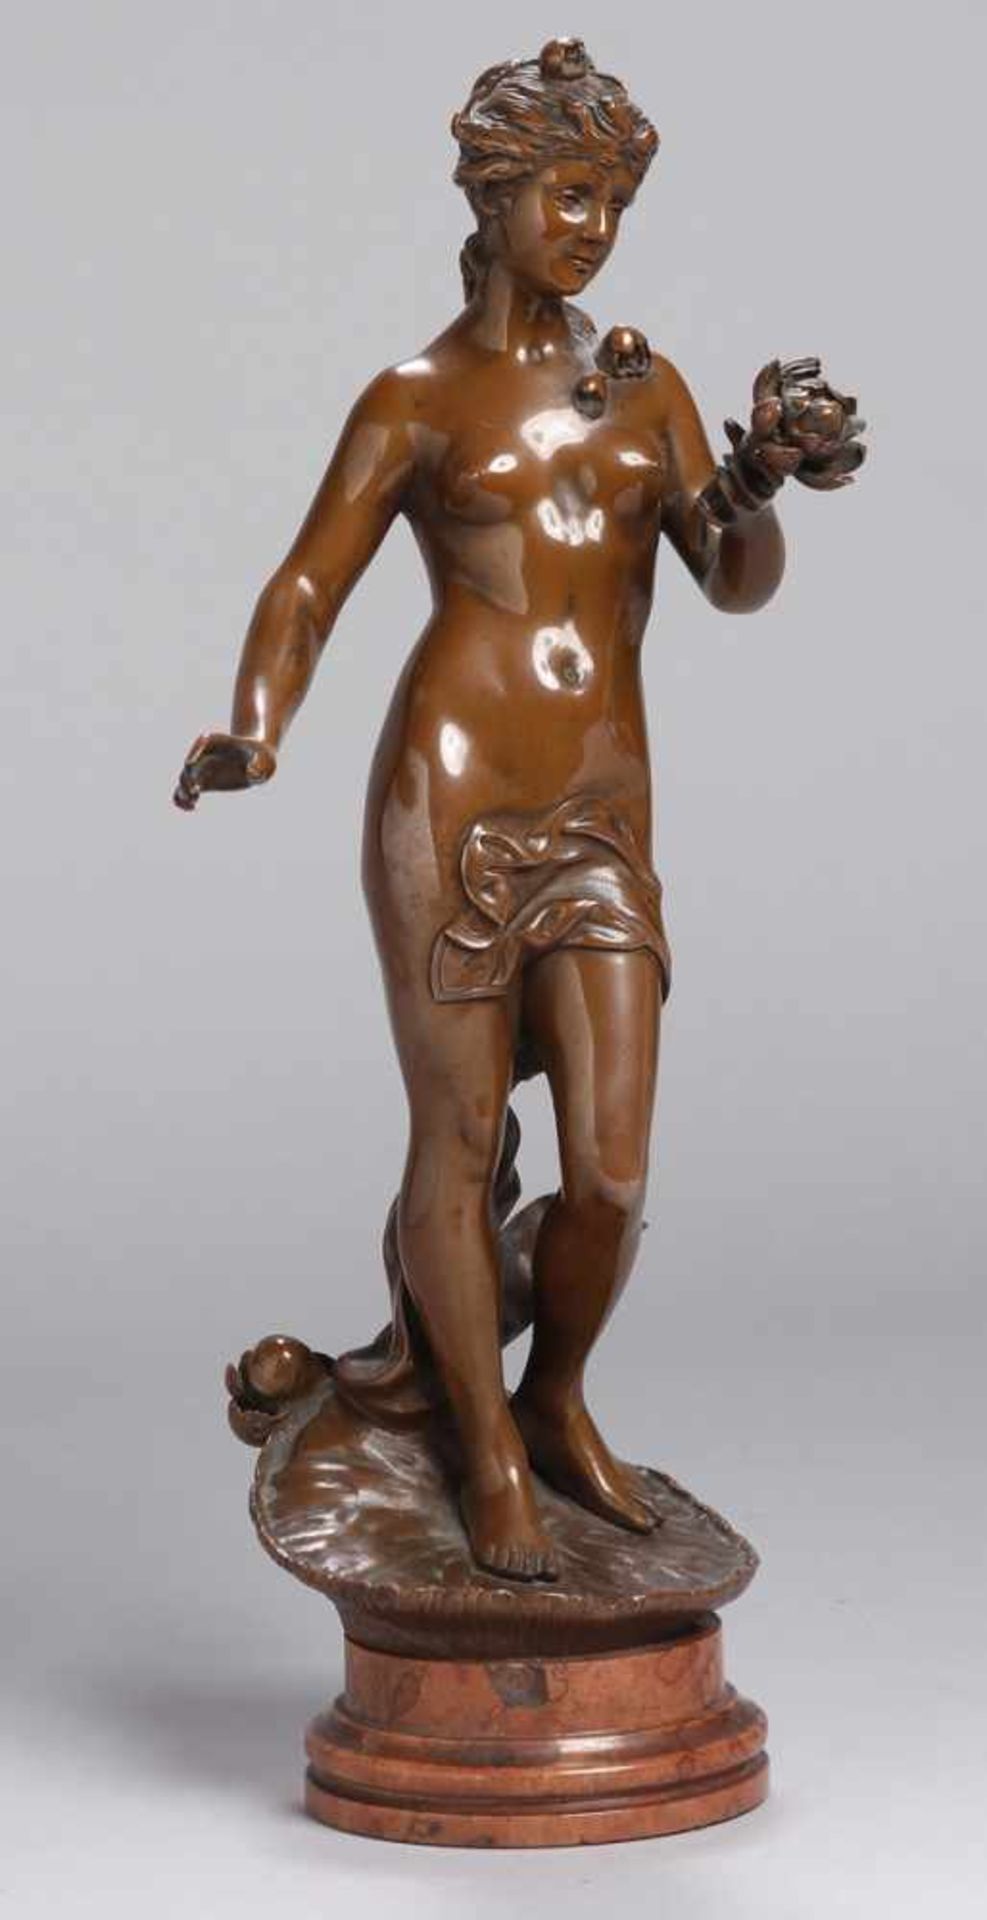 Bronze-Plastik, "Stehender, weiblicher Akt", anonymer Bildhauer um 1900, vollplastische,stehende